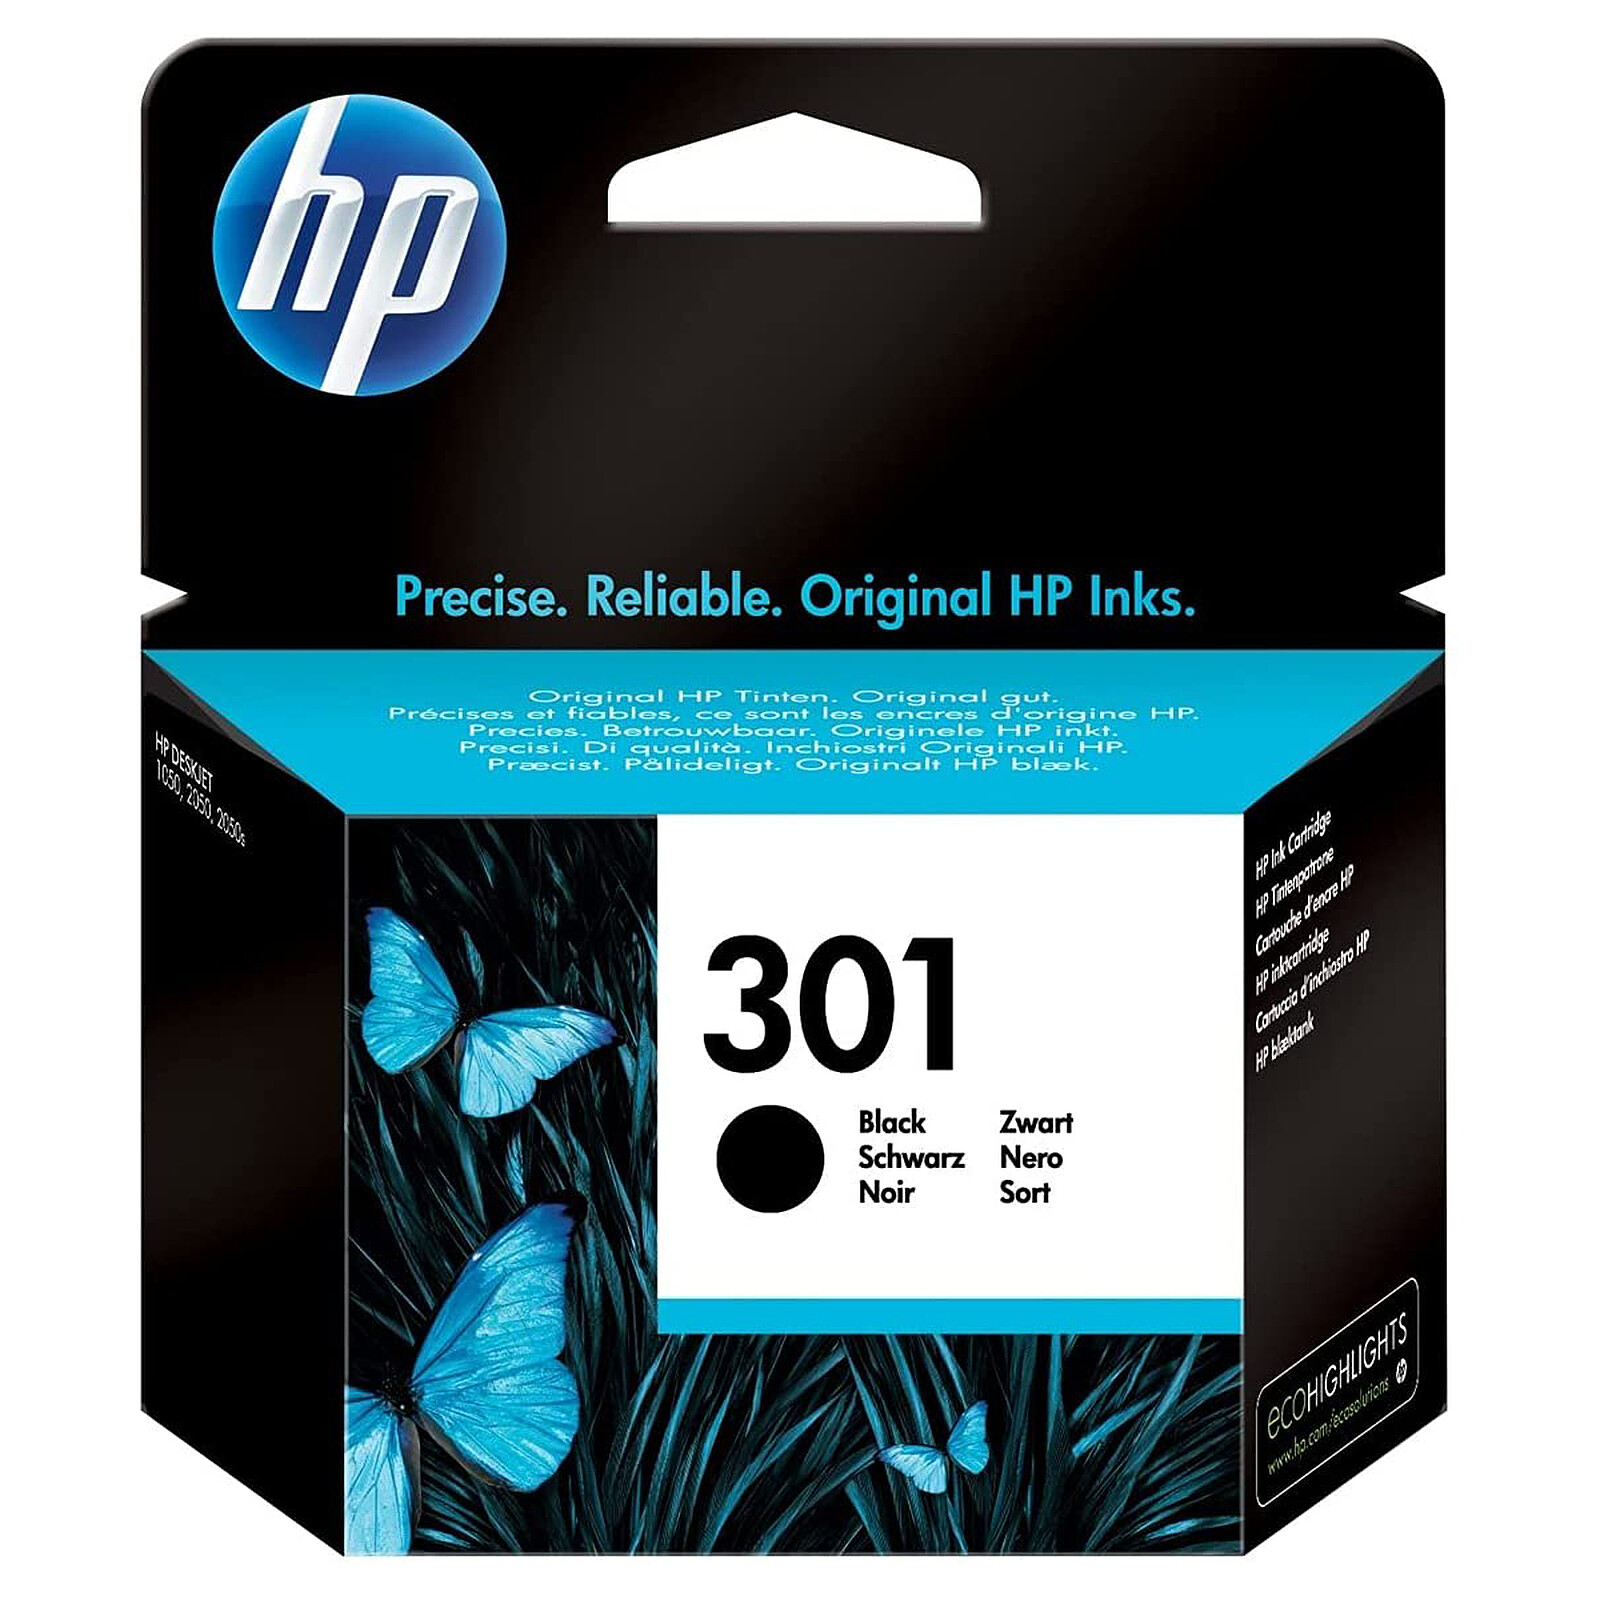 Remplacer une cartouche d'encre - Imprimante tout-en-un HP Officejet 2620 